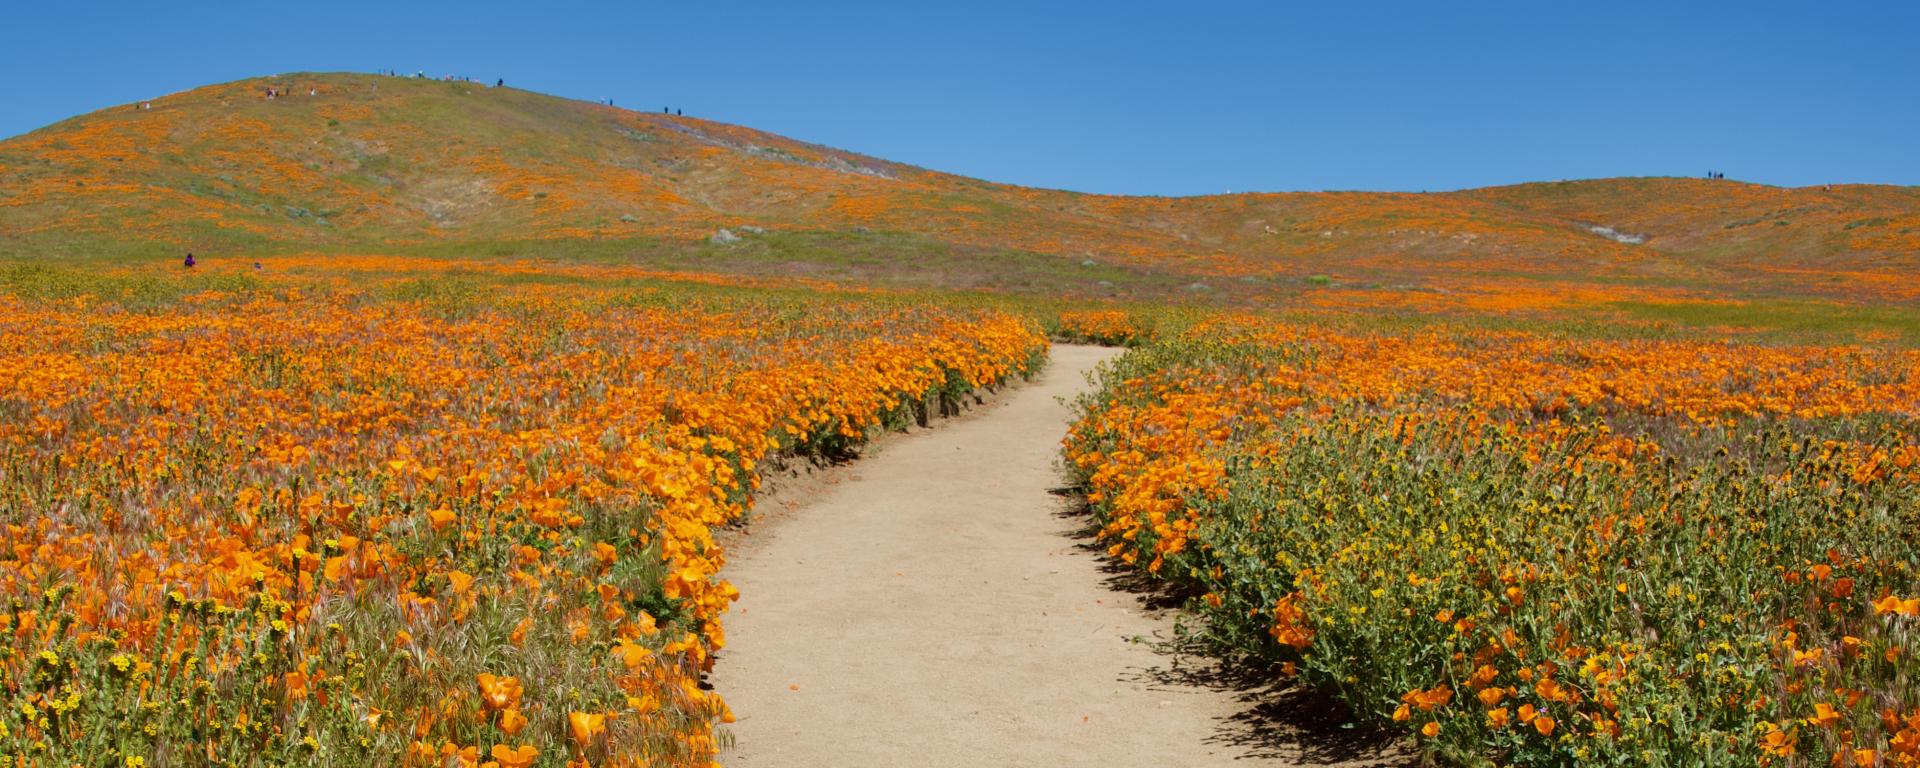 A path through a field of California poppies